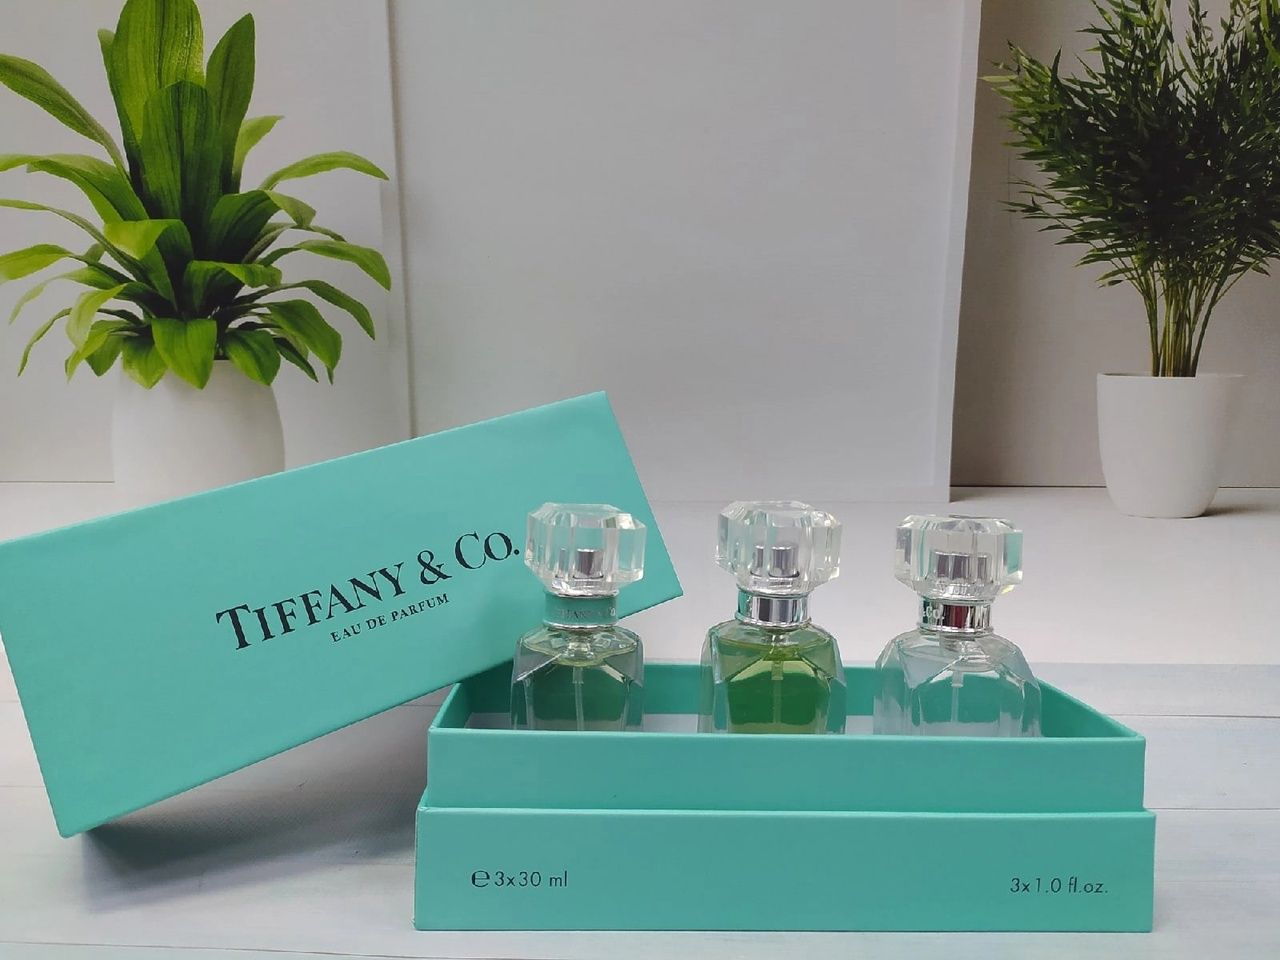 Подарочный набор Tiffany 4 x 30 ml. Тиффани набор 4 в 1 отзывы покупателей.